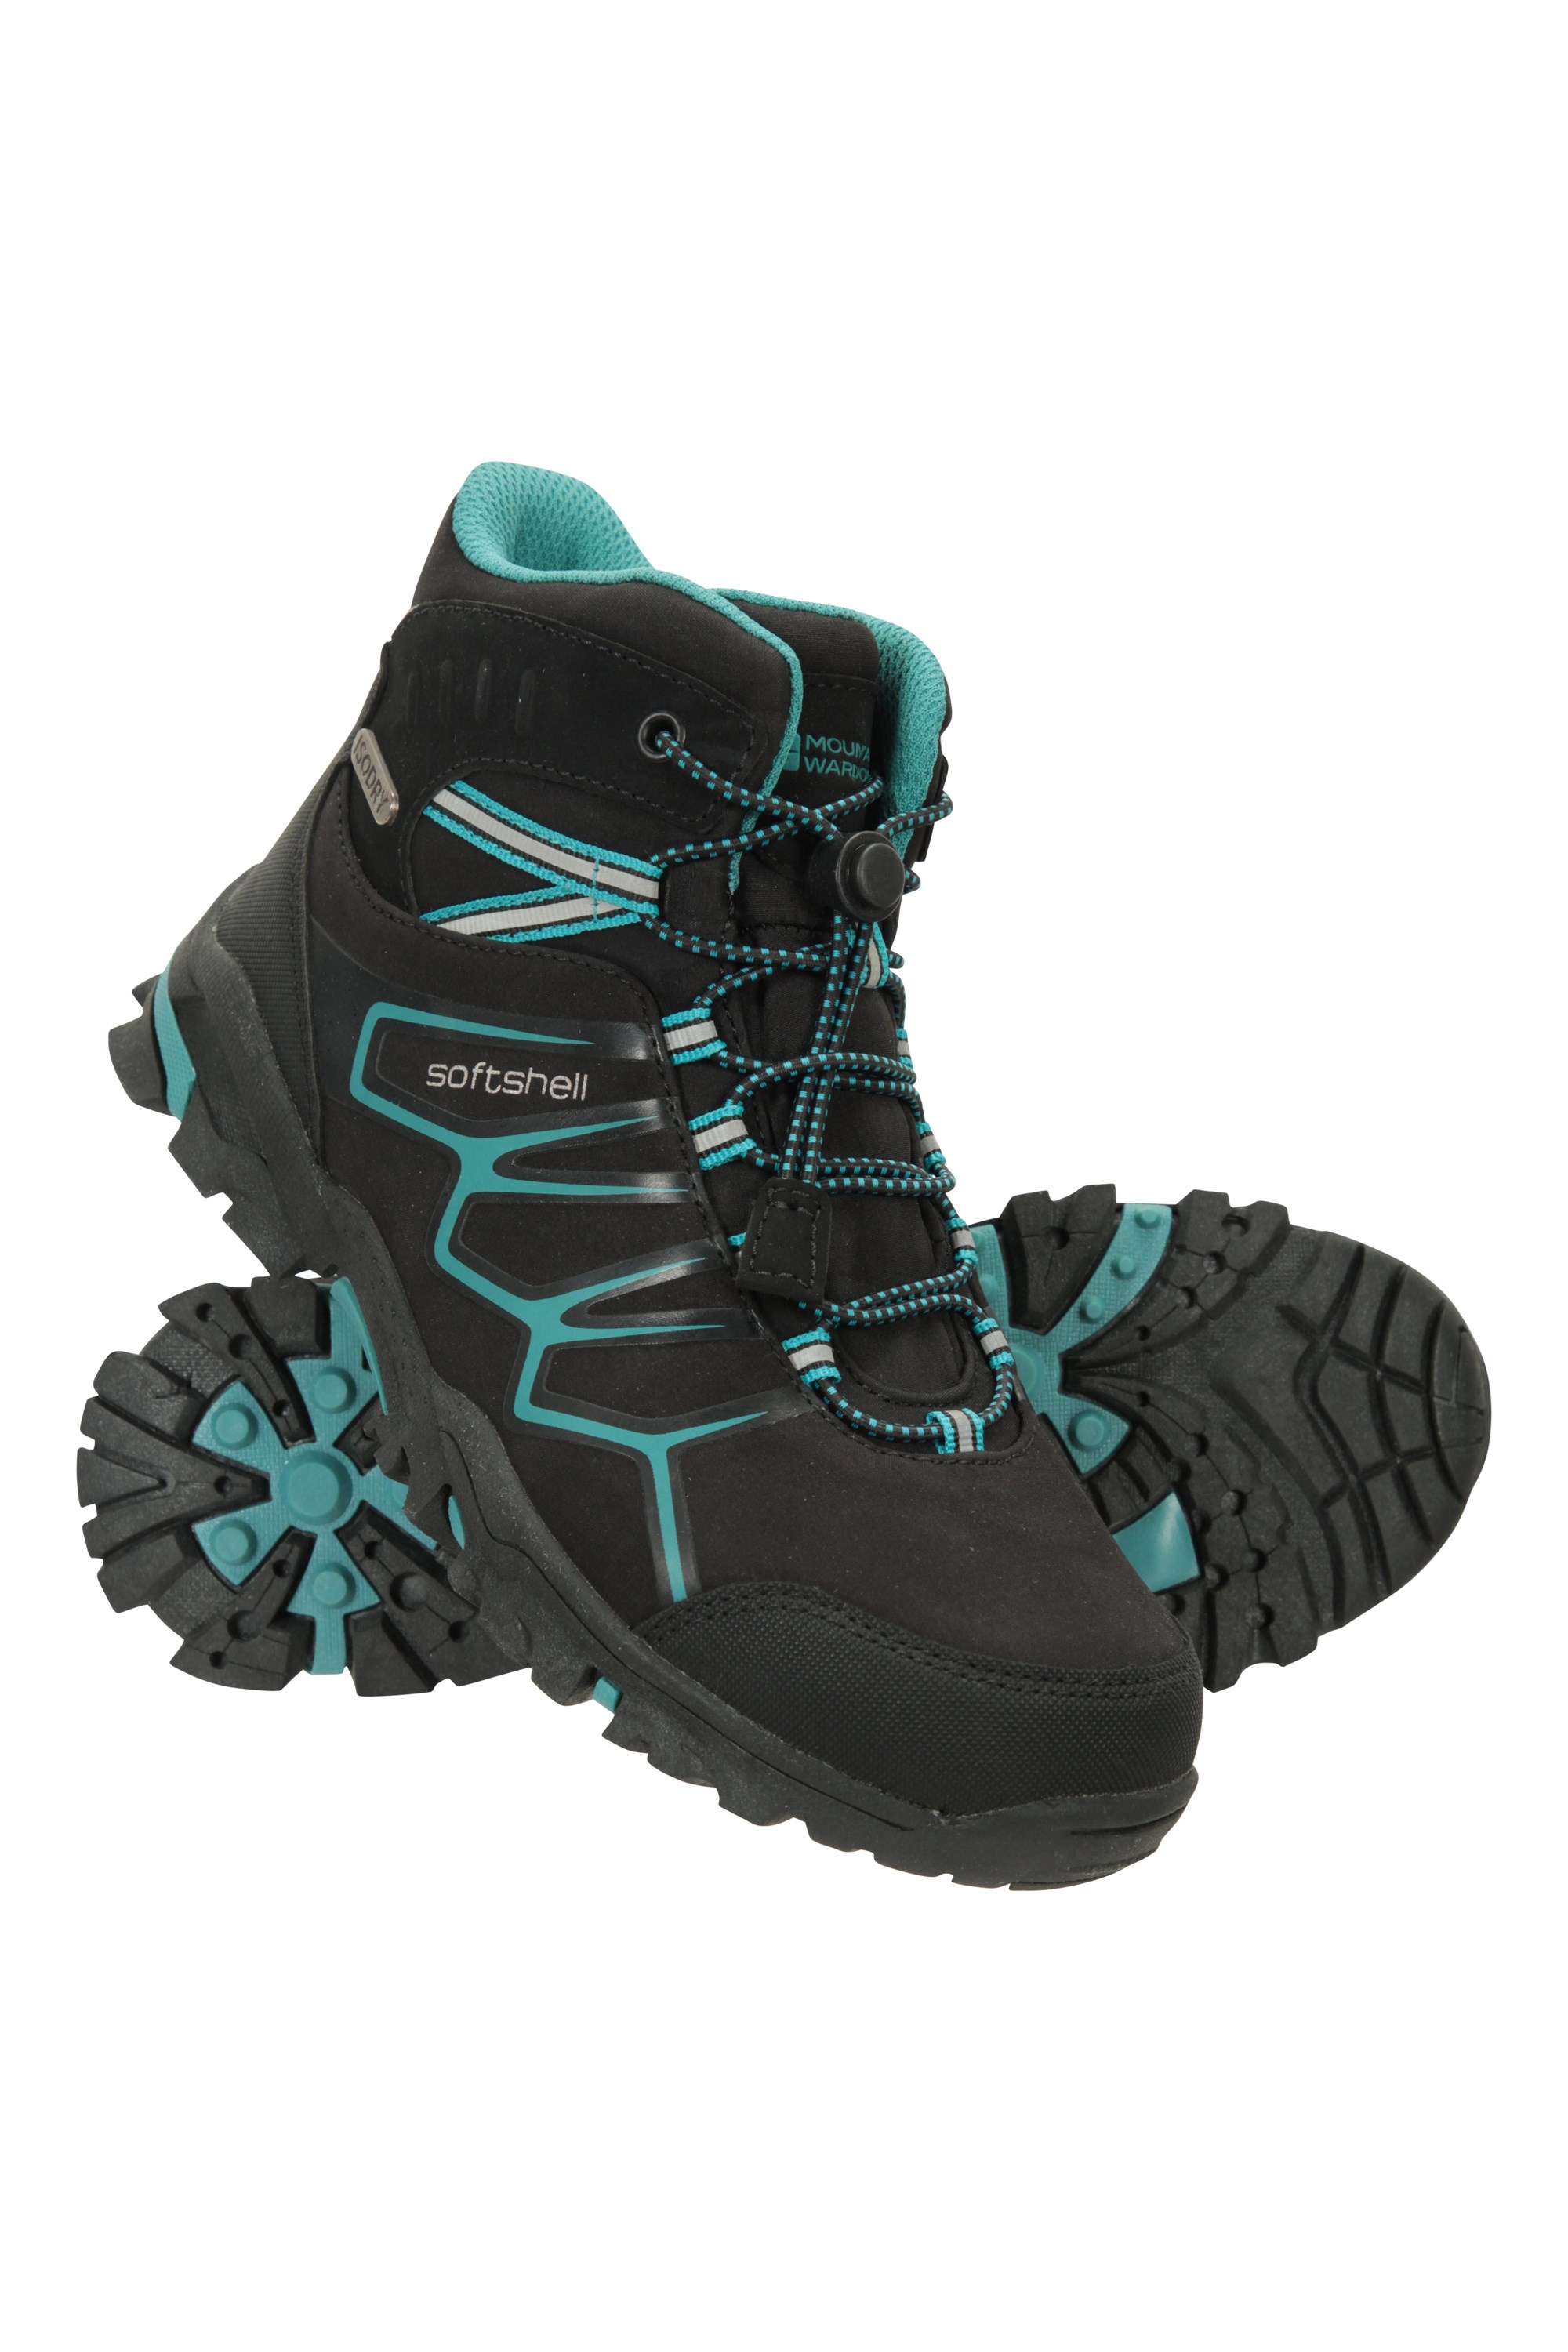 Mountain Warehouse Kids Waterproof Boots Mesh Girls & Boys Shoes 